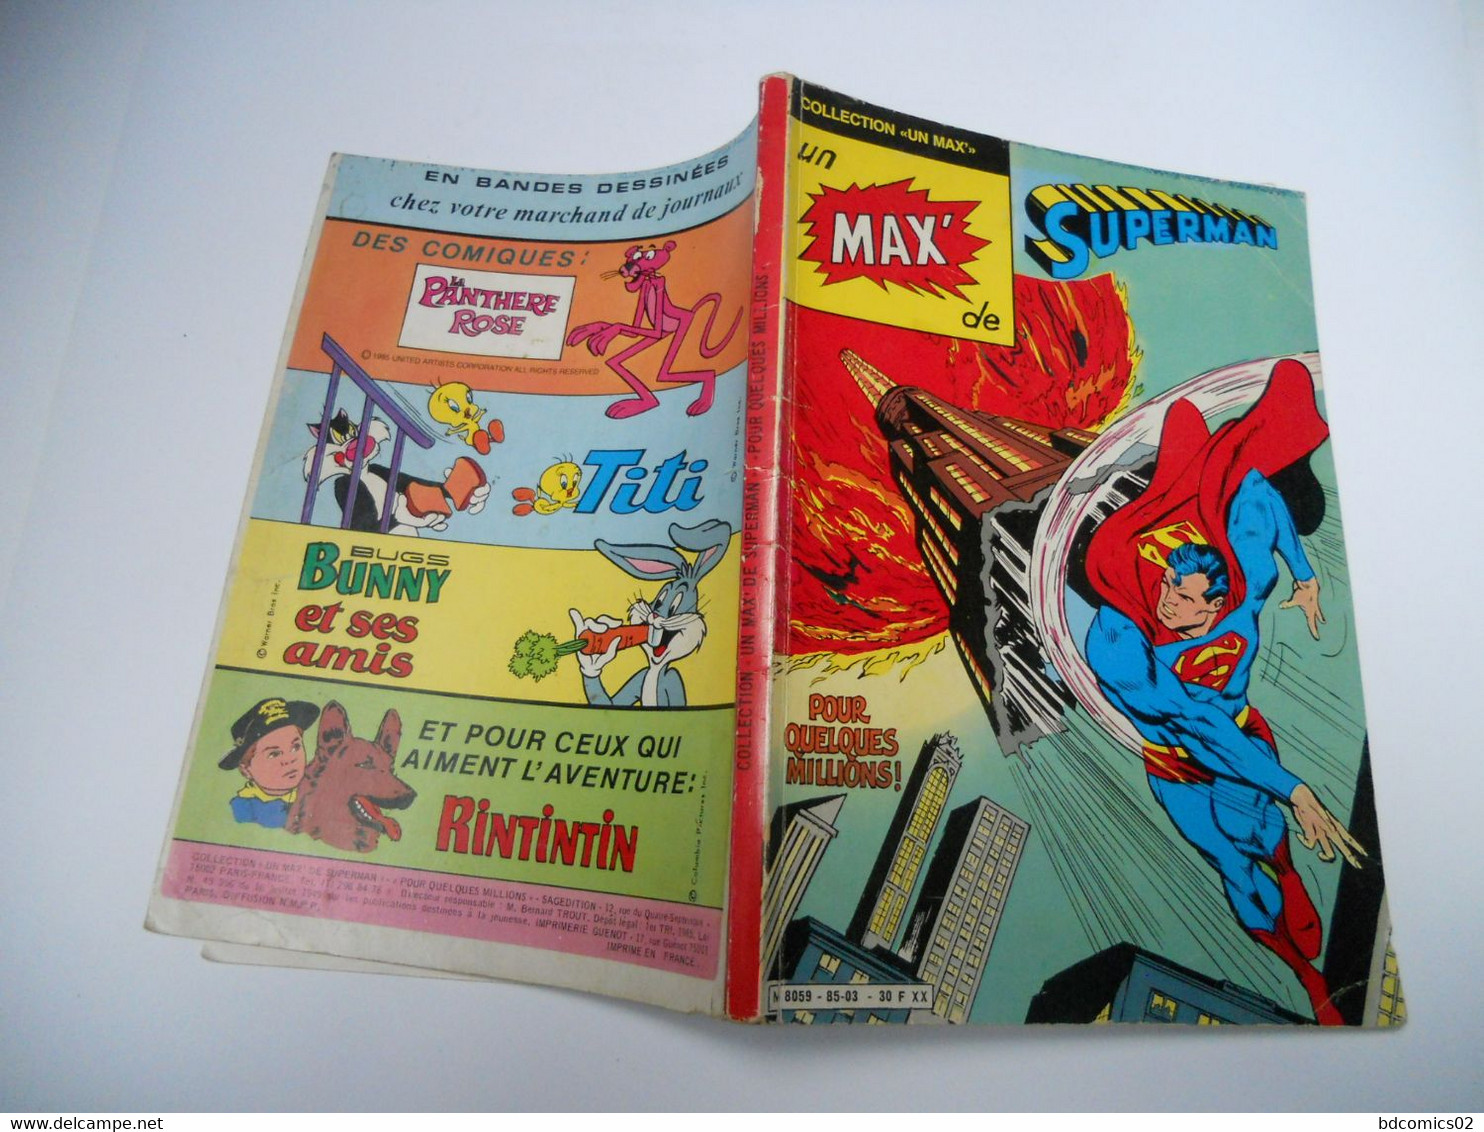 Collection Un Max De Superman N° 01 : Pour Quelques Millions  SAGEDITION 1985 - Superman